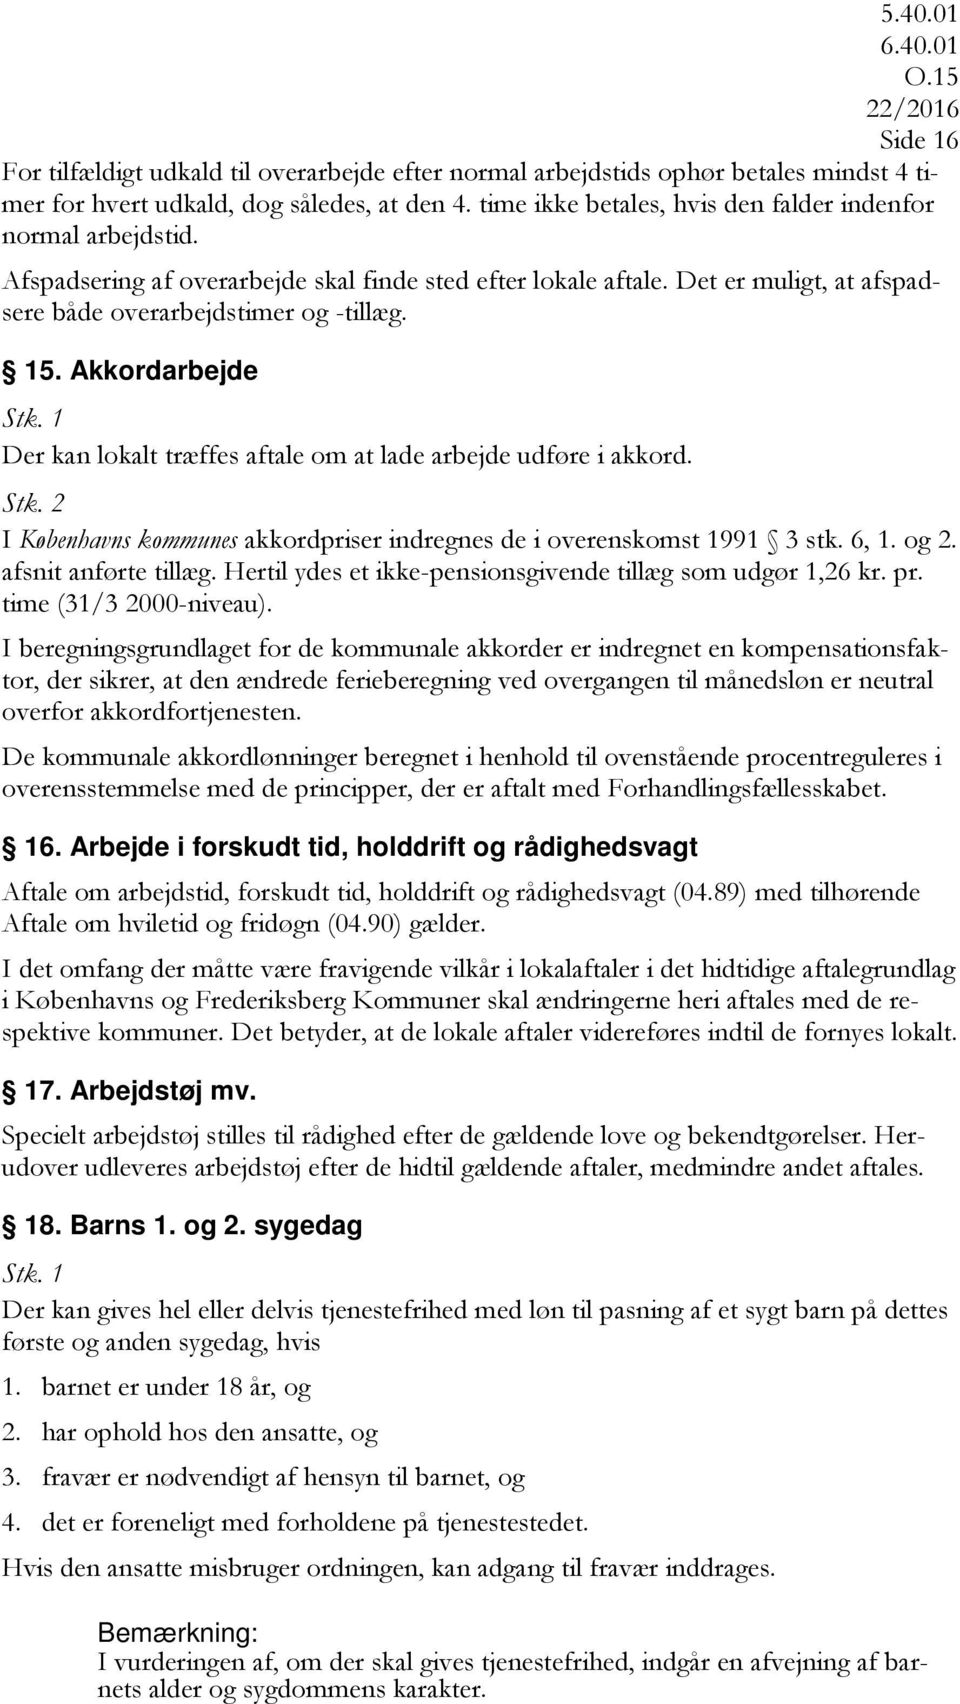 Akkordarbejde Der kan lokalt træffes aftale om at lade arbejde udføre i akkord. I Københavns kommunes akkordpriser indregnes de i overenskomst 1991 3 stk. 6, 1. og 2. afsnit anførte tillæg.